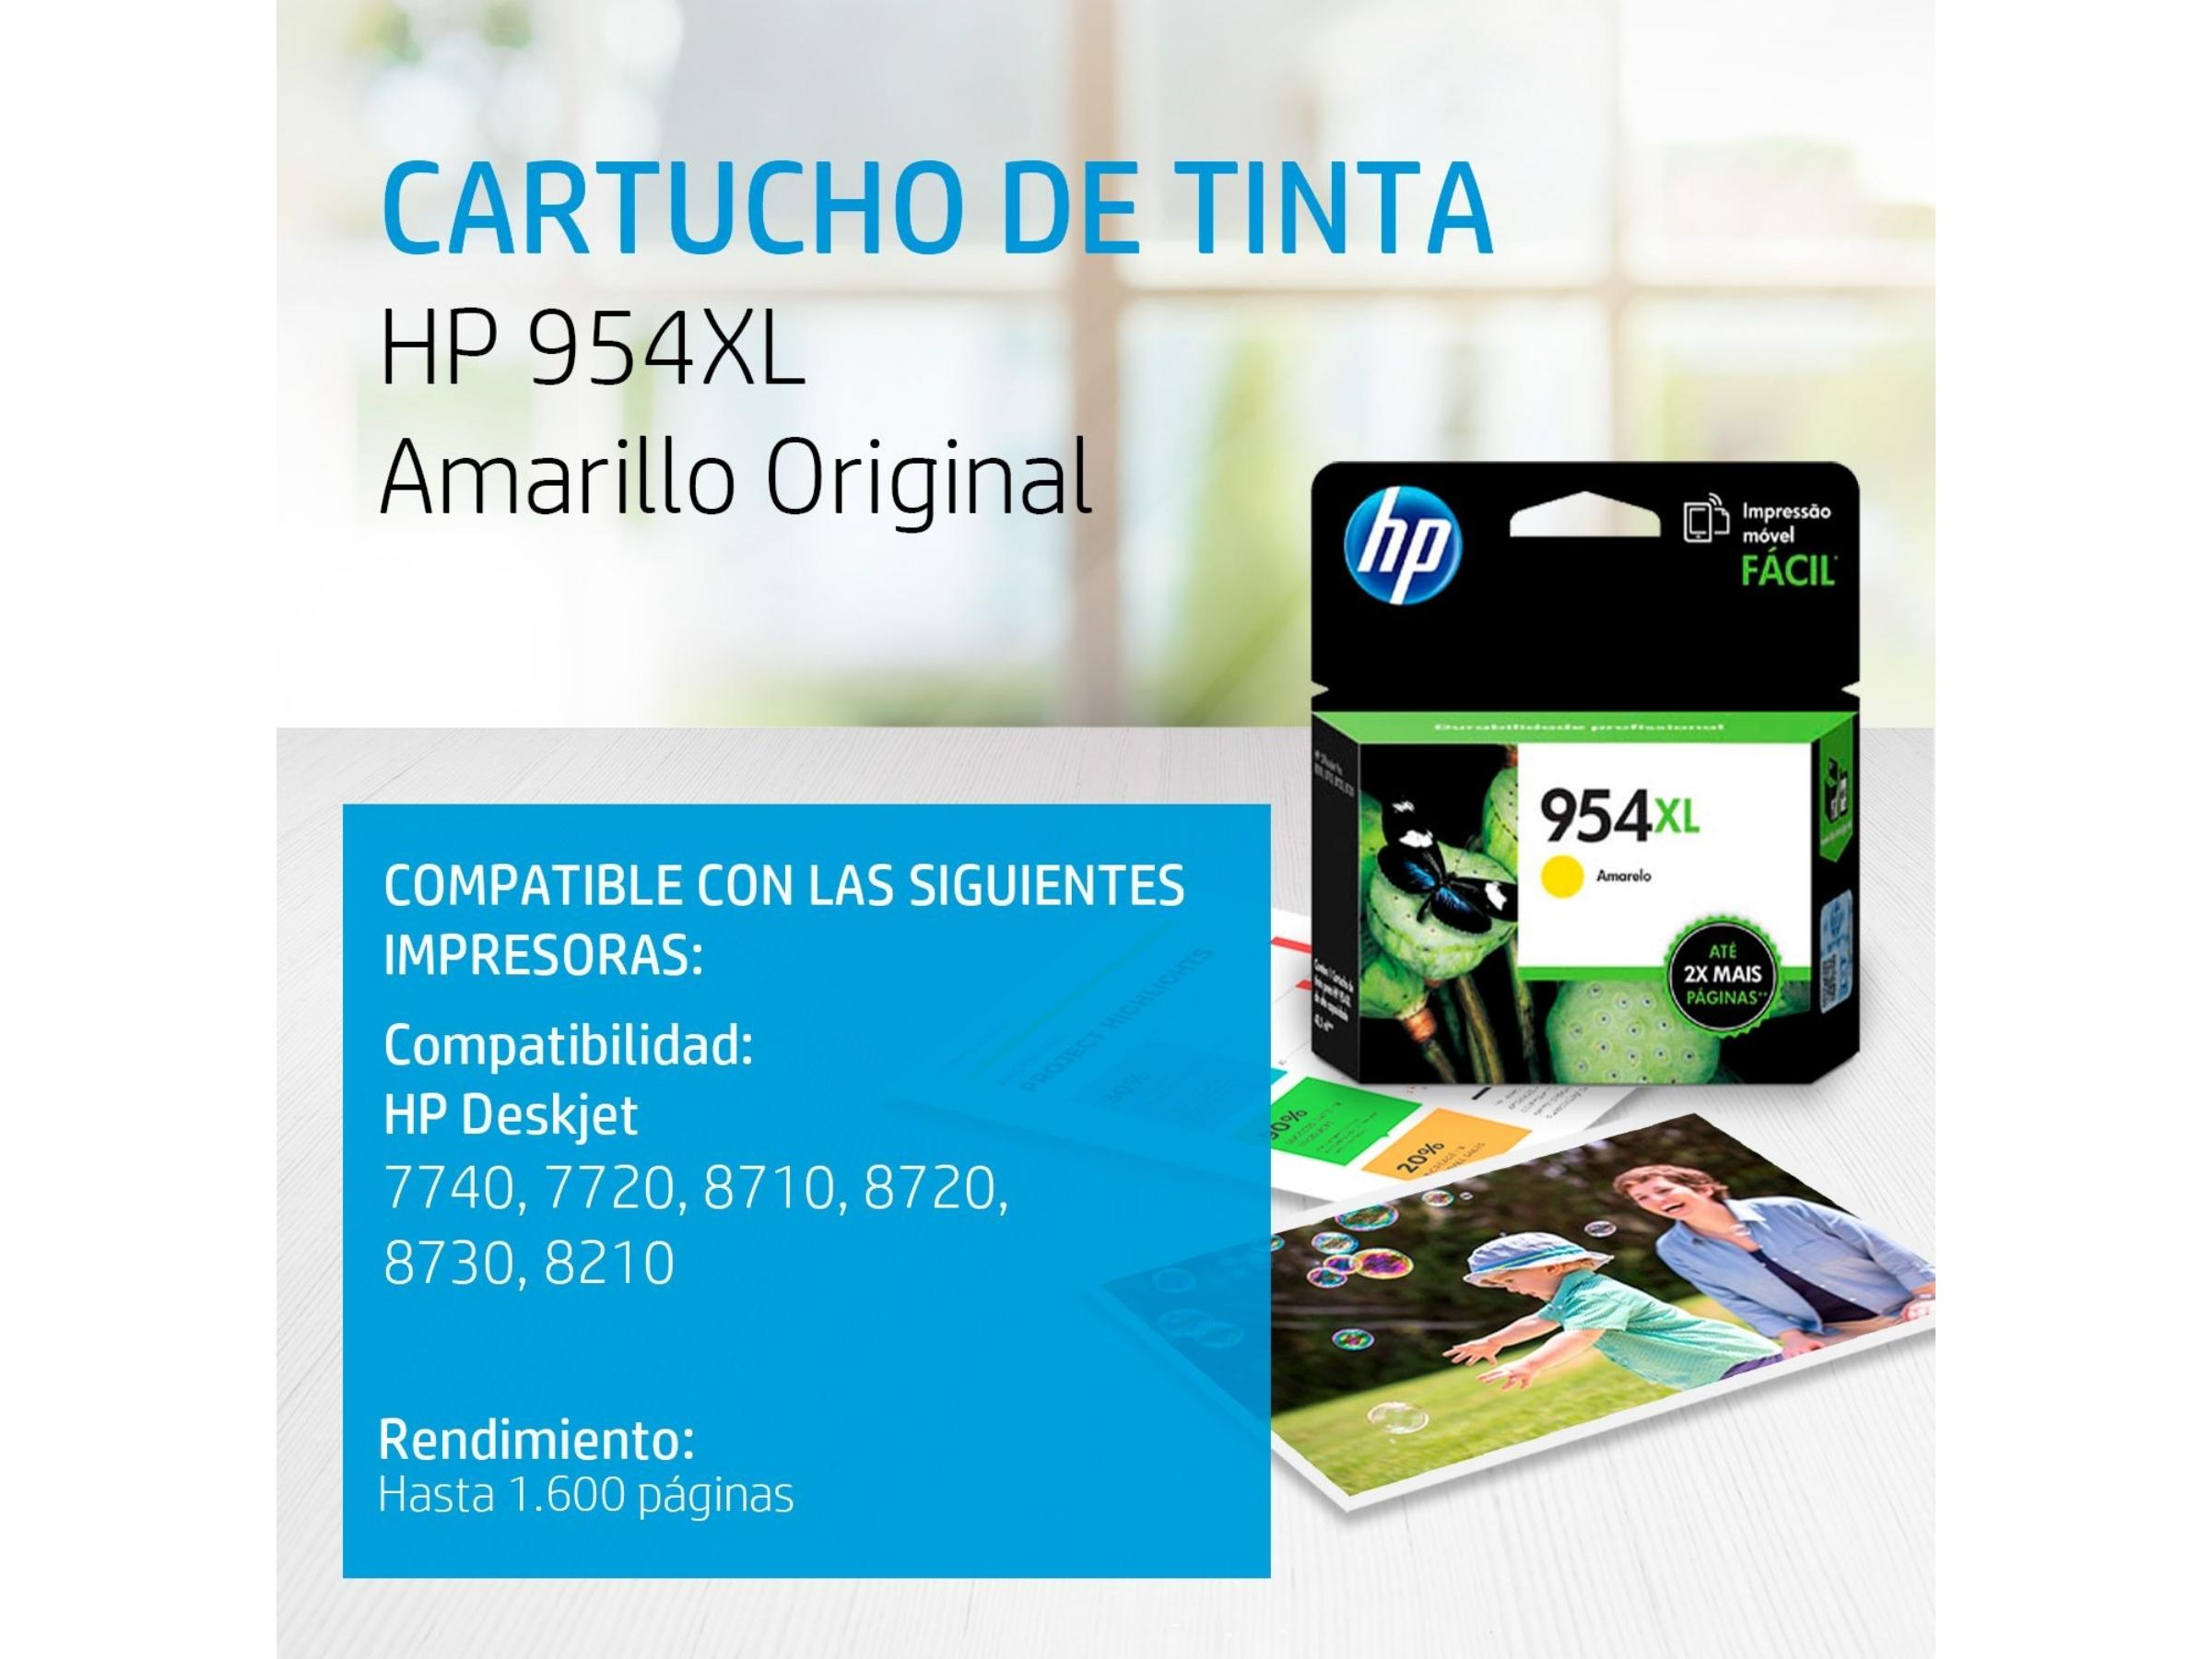 CARTUCHO DE TINTA HP 954XL YELLOW (L0S68AL) 8210/8710/8720/8730/7740 2000 PAG.